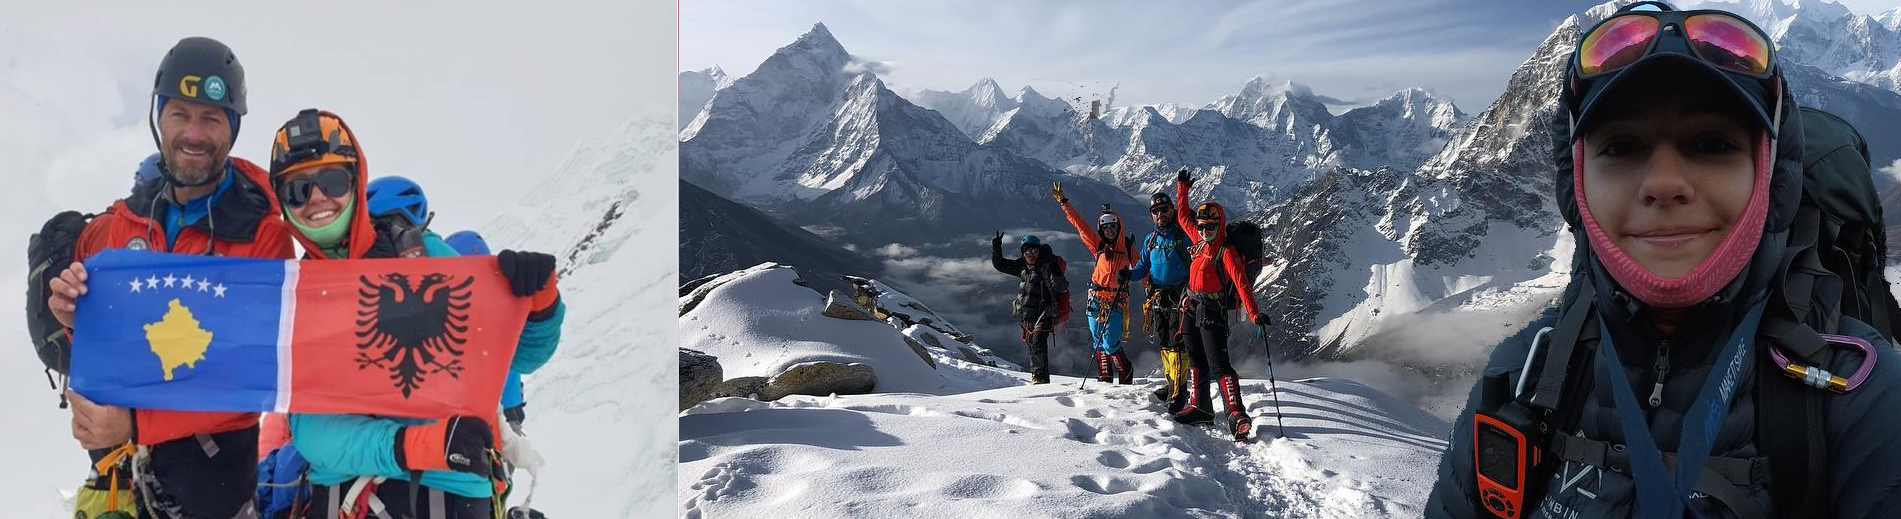 16-vjeçarja shqiptare dhe i ati ngjisin së bashku Everestin (8848 m)